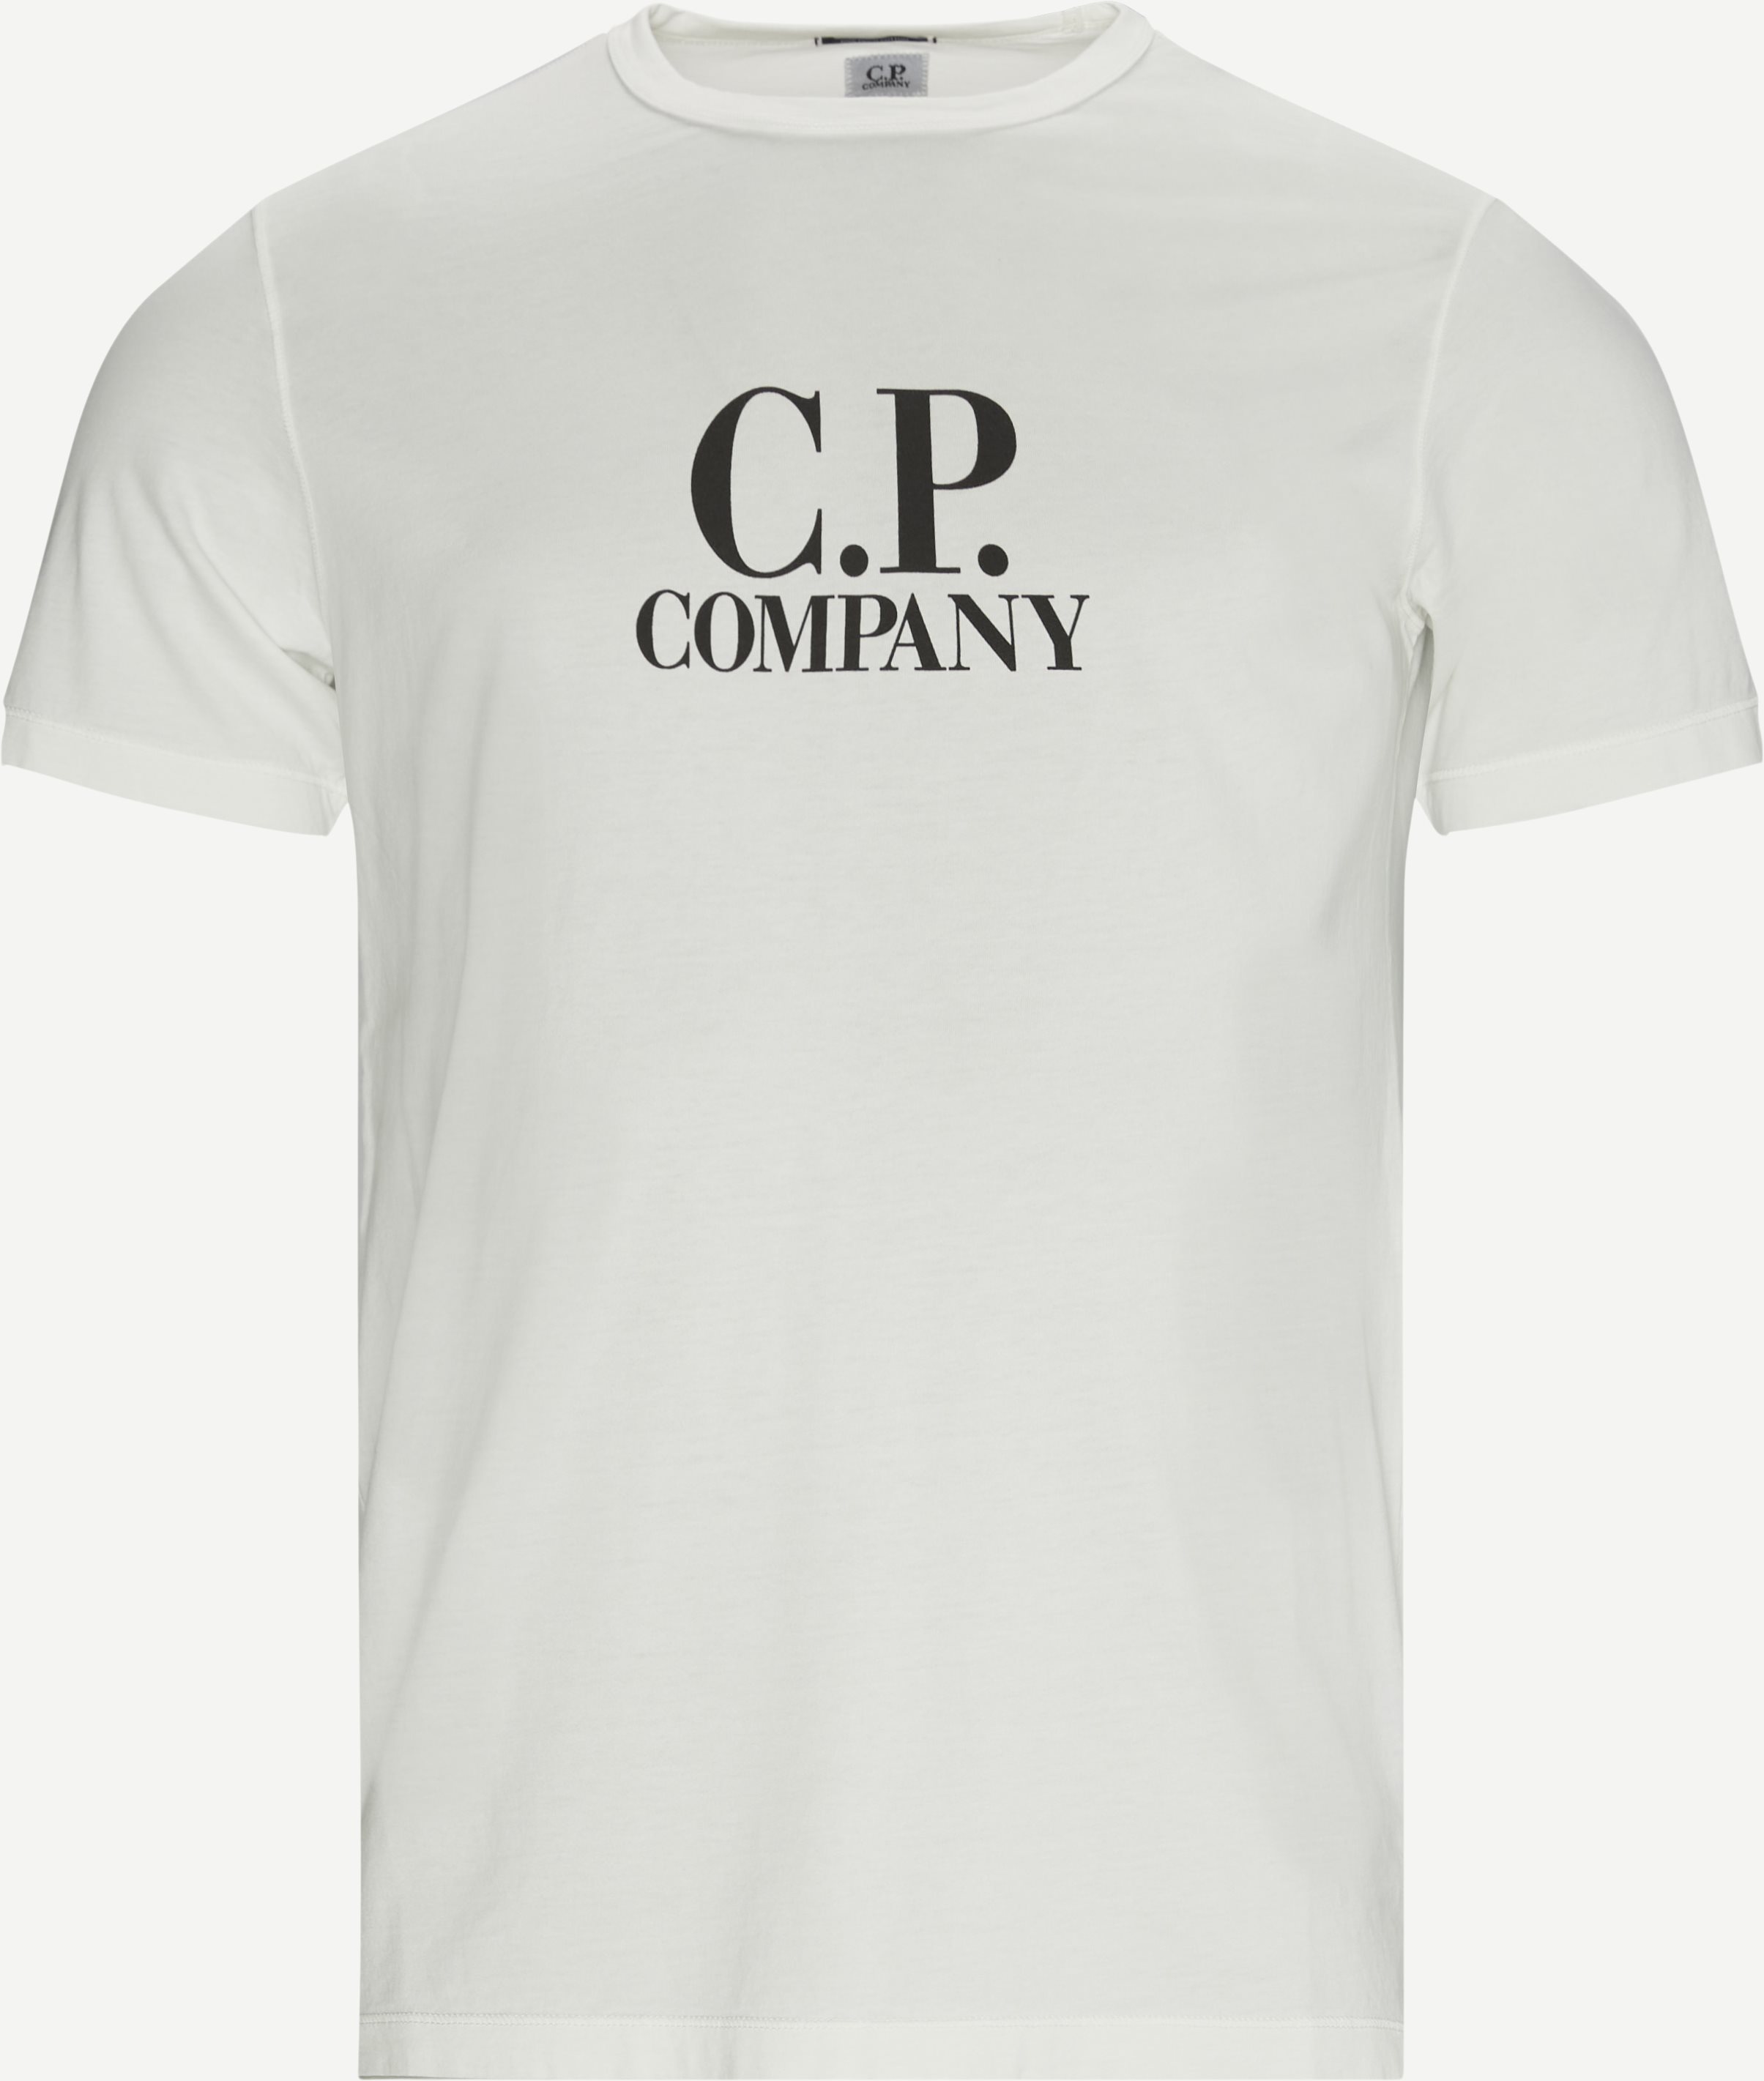 Logo Tee - T-shirts - Regular fit - Hvid